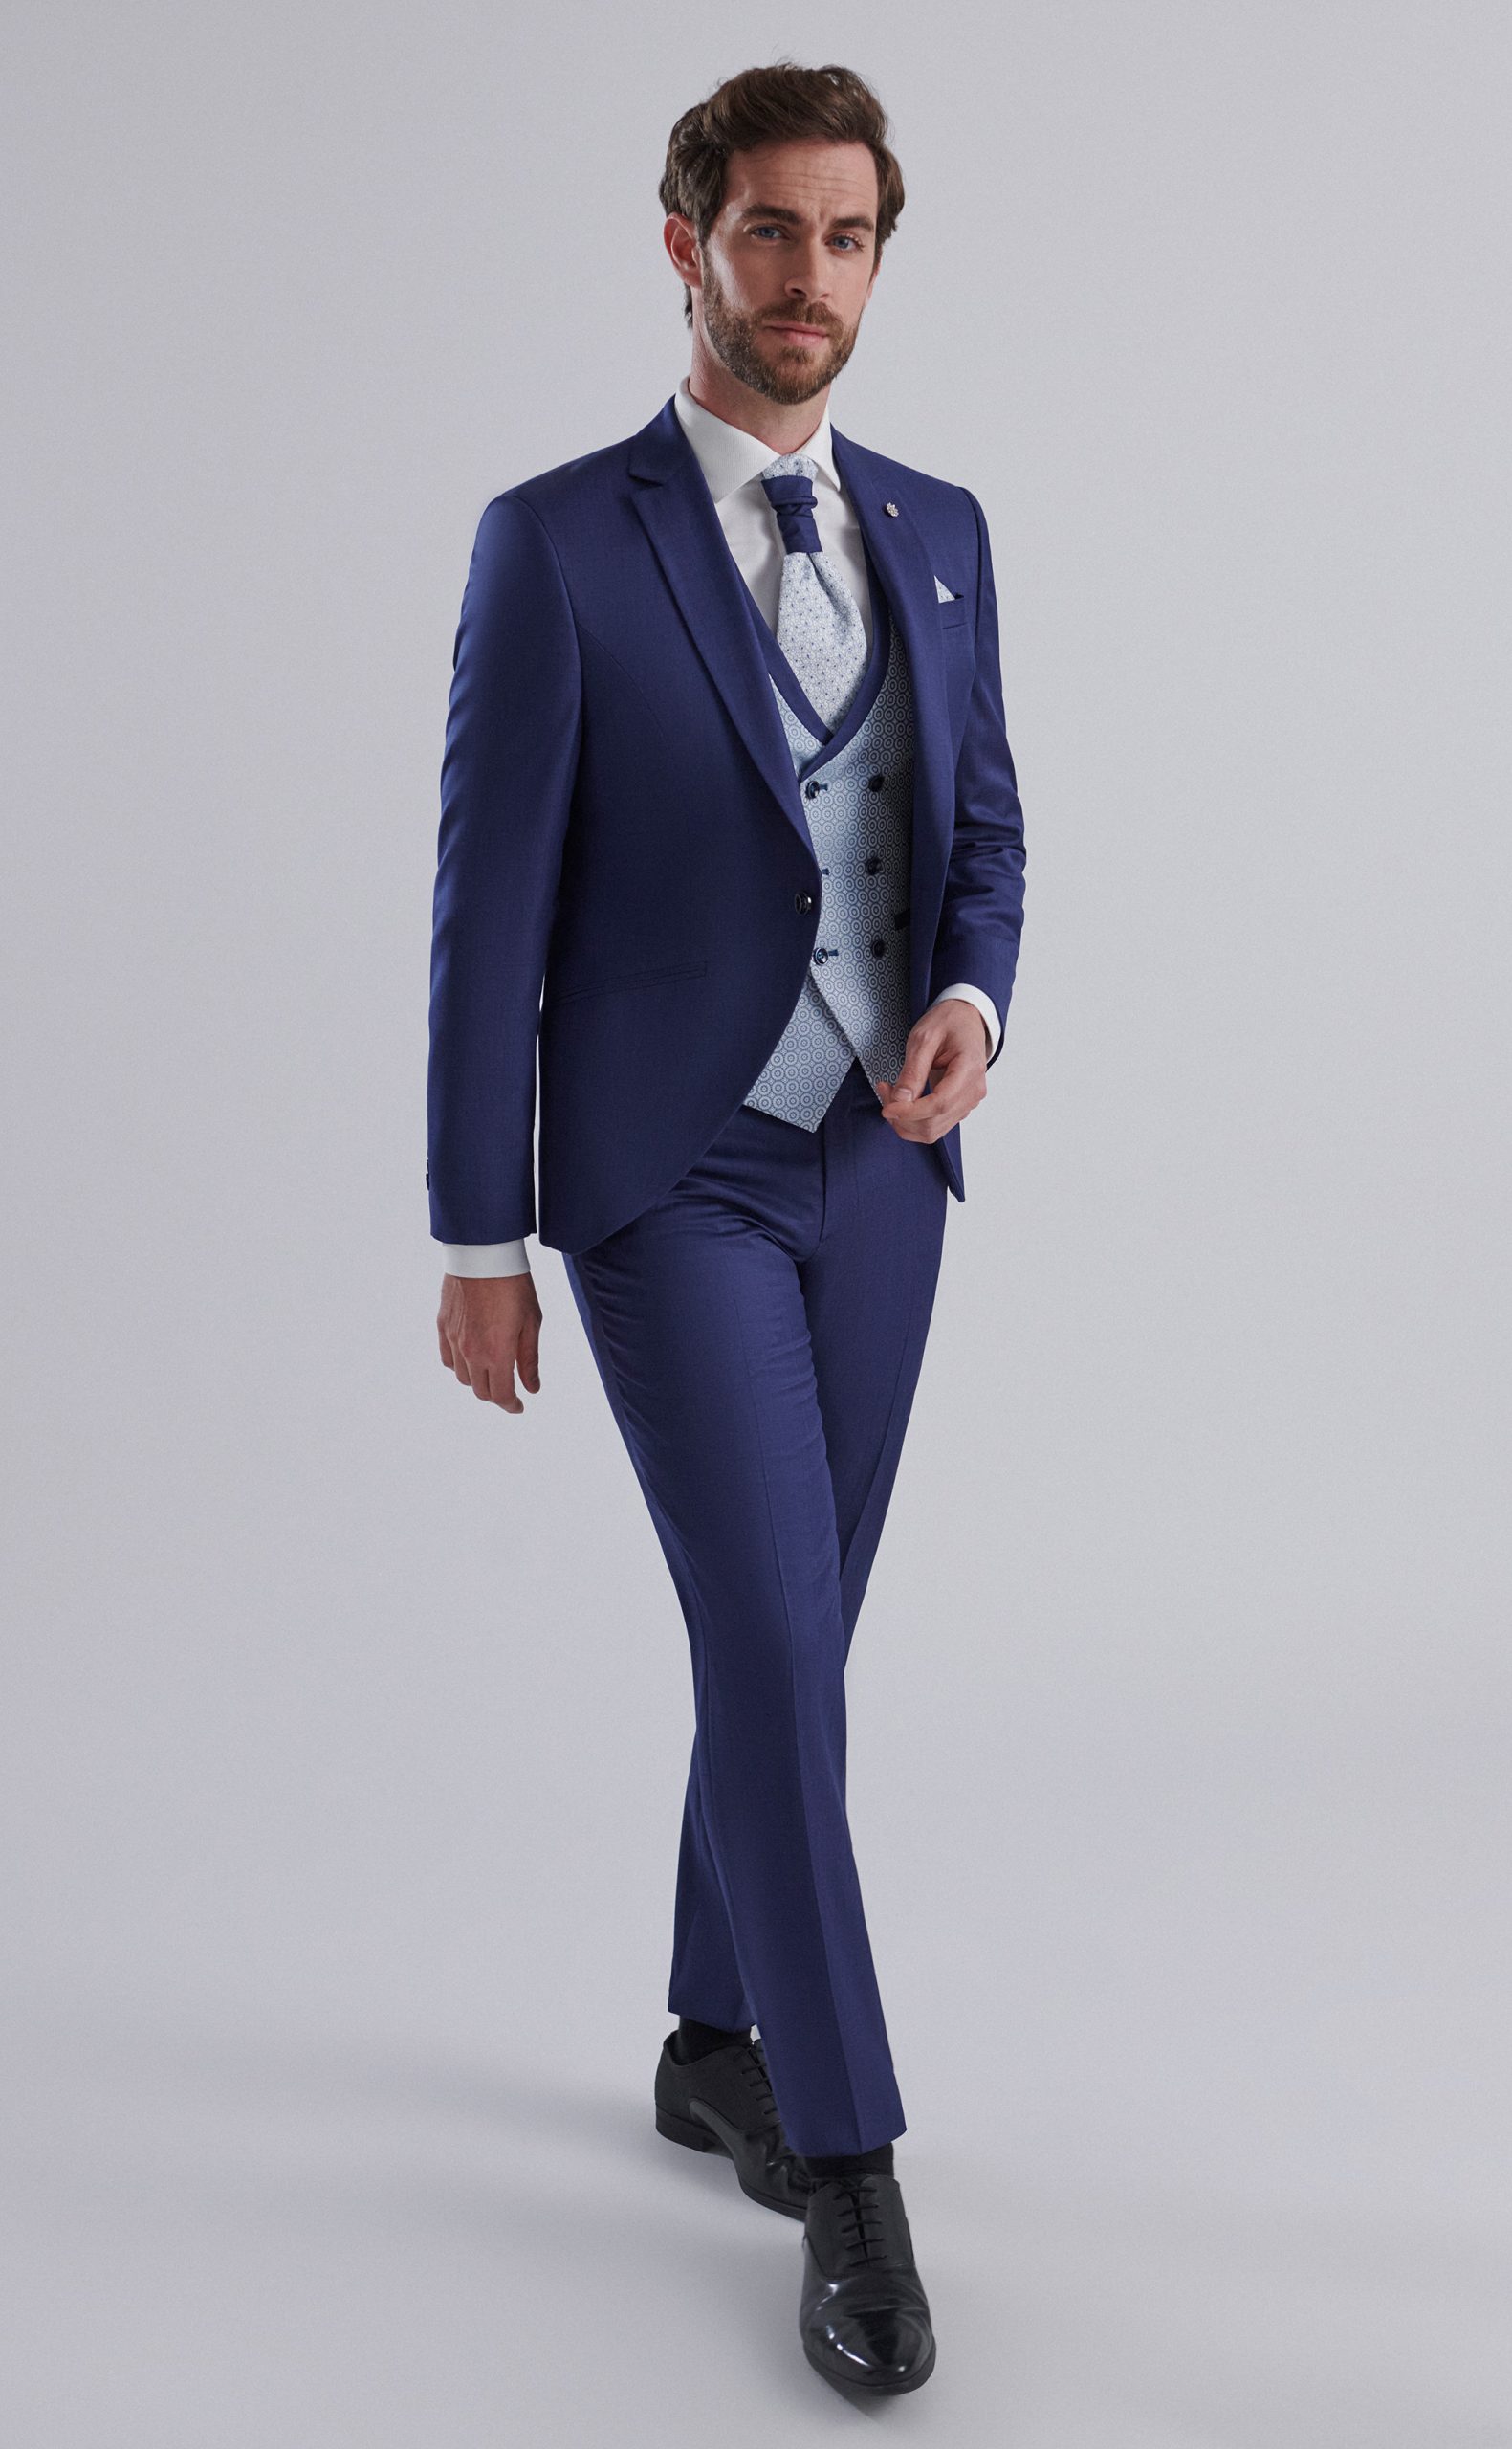 Semilevita de novio en color azul noche con chaleco cruzado y falsa solapa con corbatín bicolor de la Colección Trend.